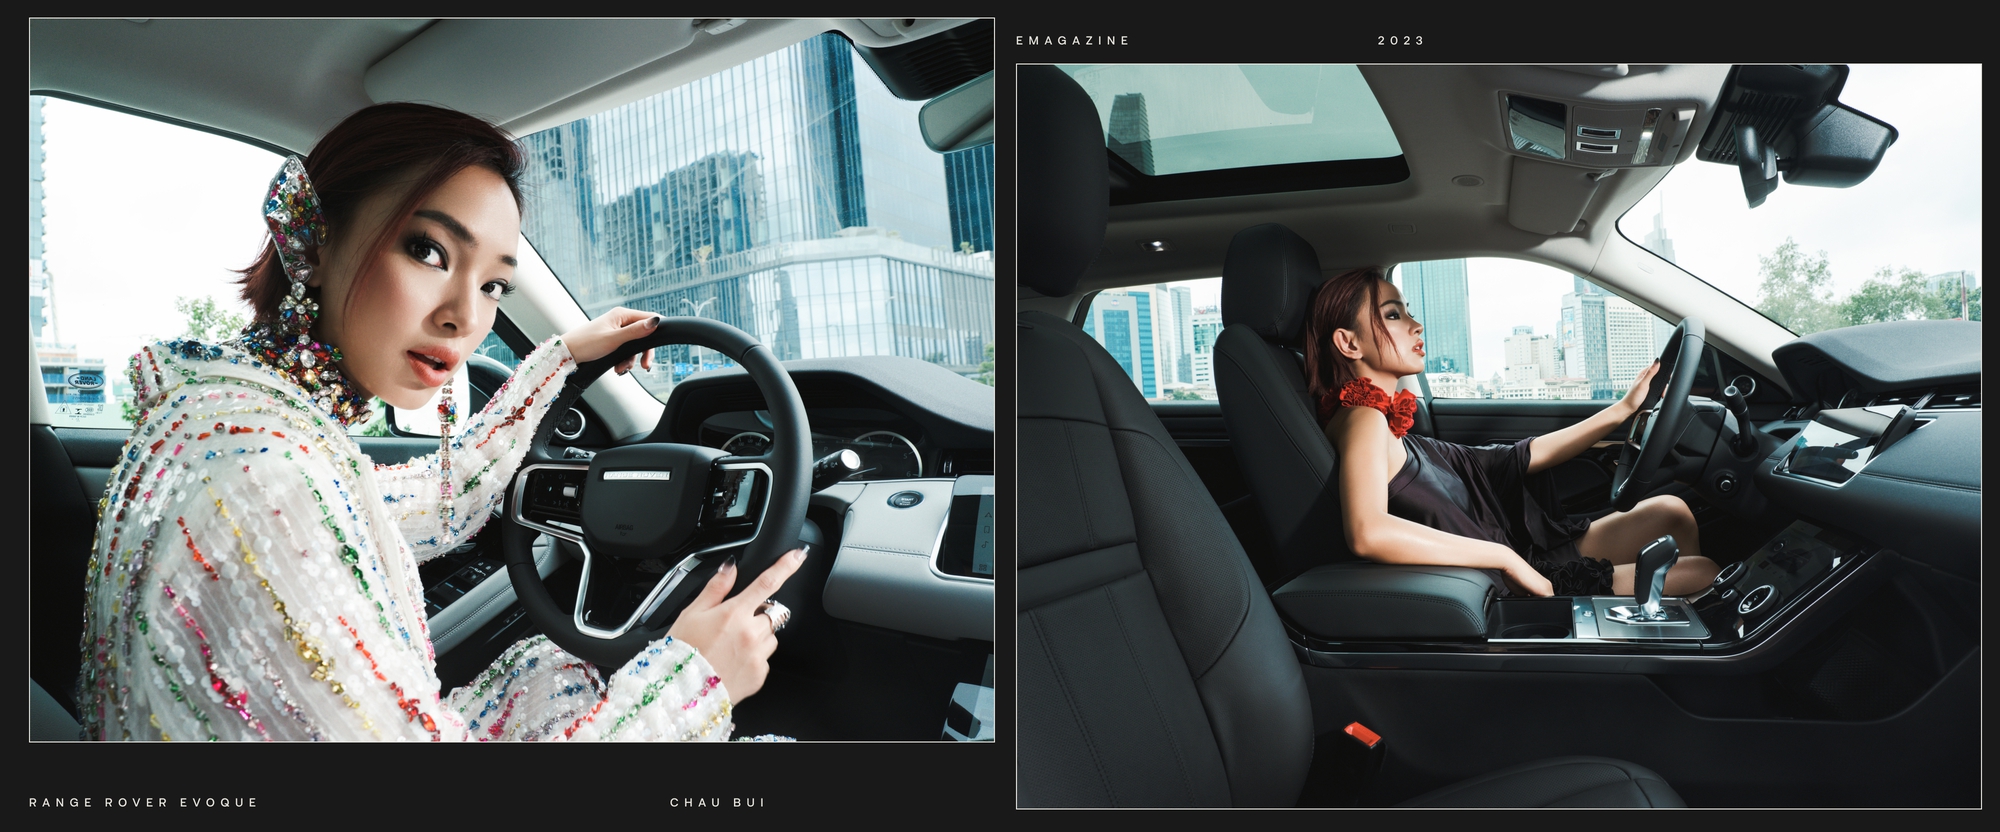 Châu Bùi chọn Range Rover Evoque: GenZ hiện đại khó tính trong việc chọn xe, nhưng cởi mở với những đột phá mới - Ảnh 4.